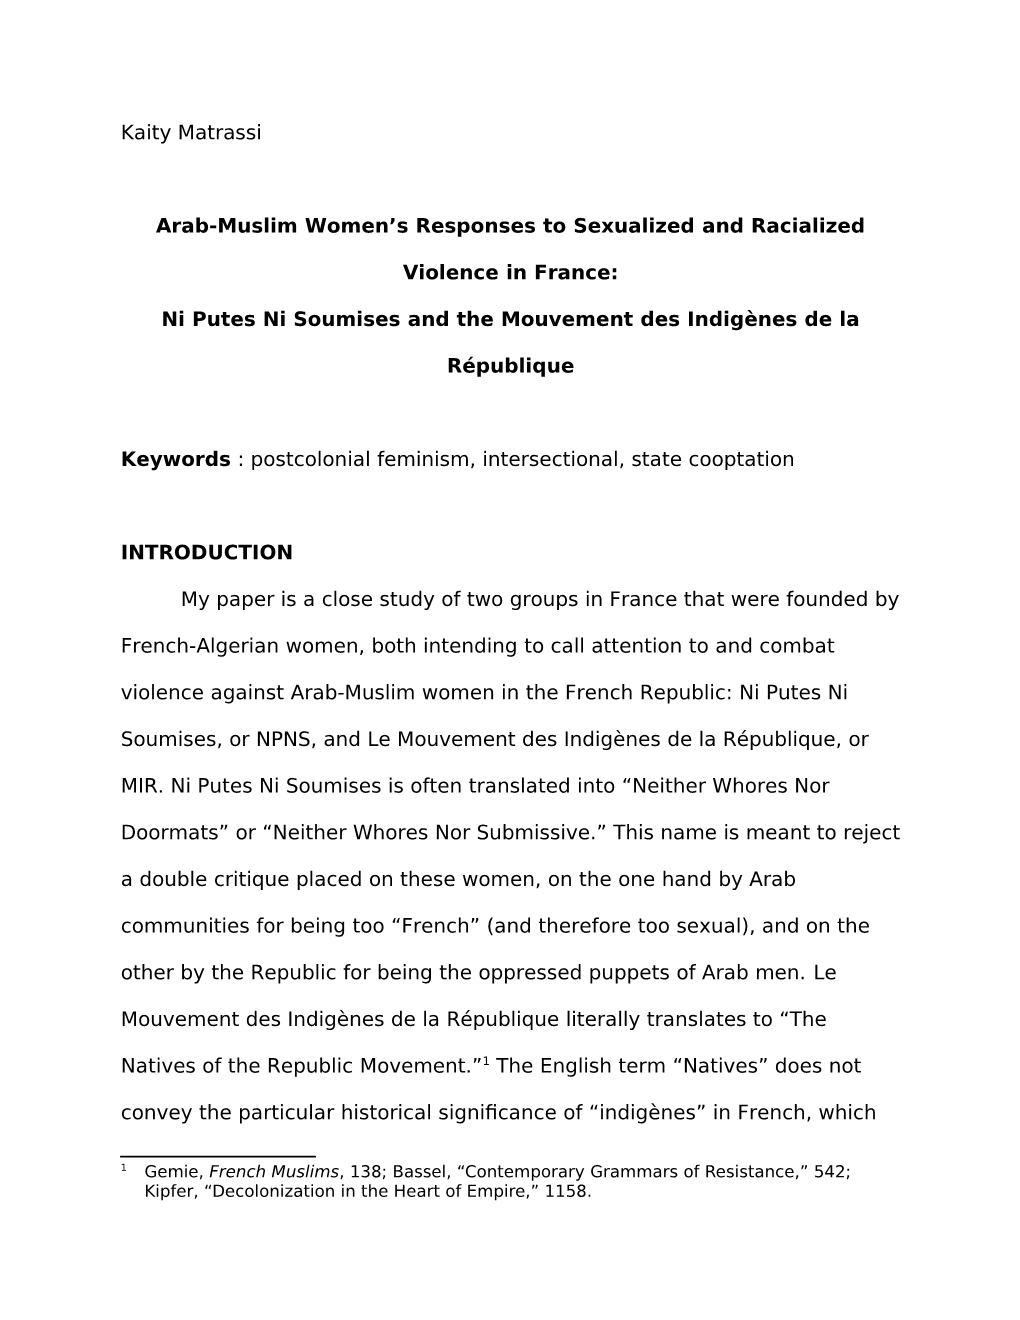 Kaity Matrassi Arab-Muslim Women's Responses To